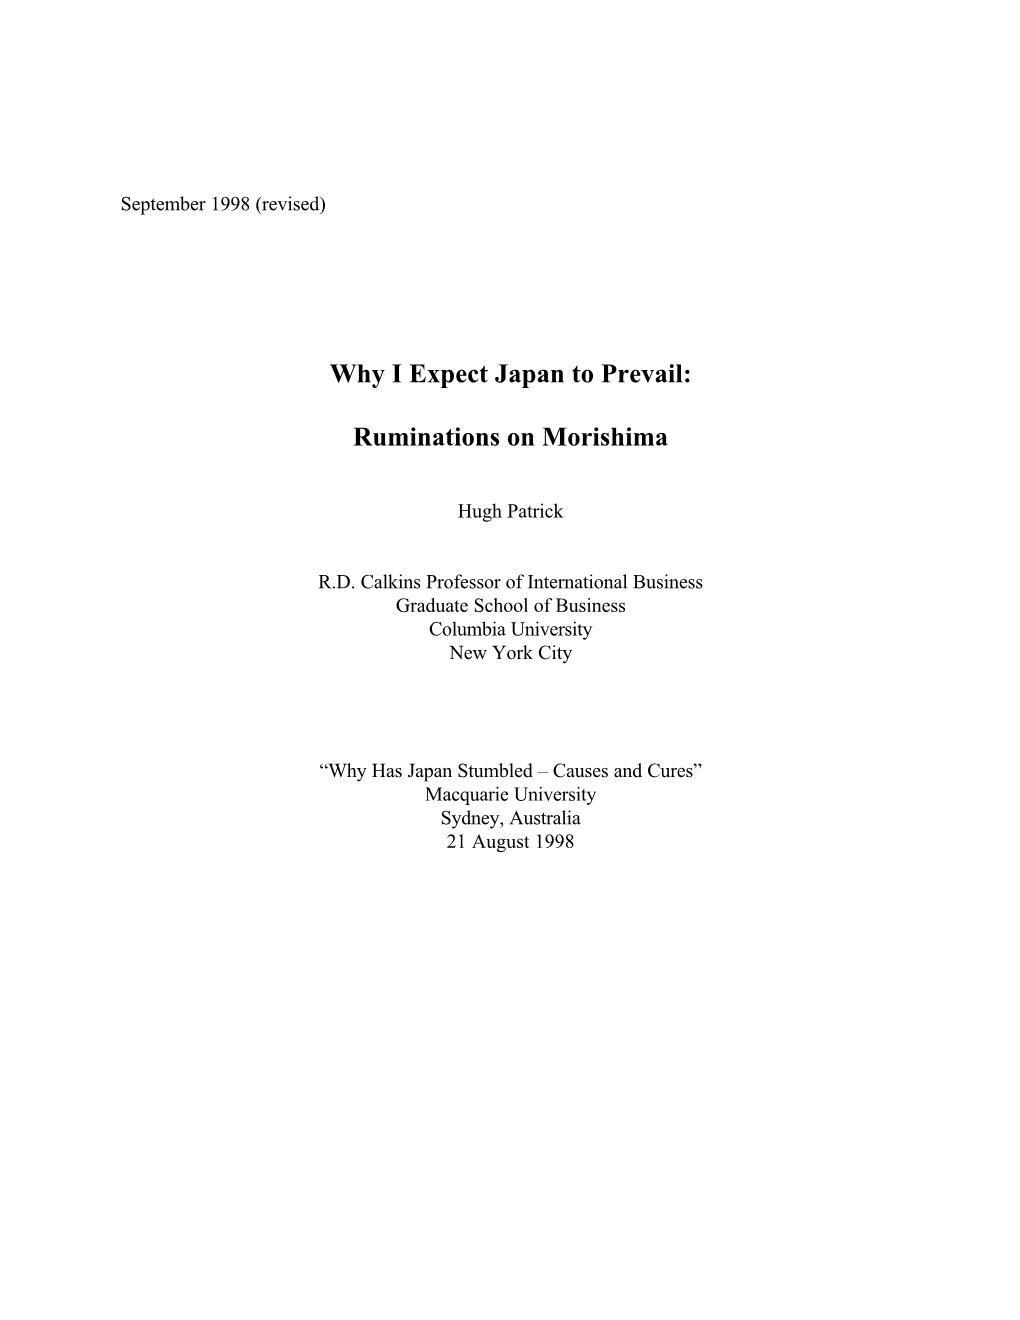 Why I Expect Japan to Prevail: Ruminations on Morishima Hugh Patrick*